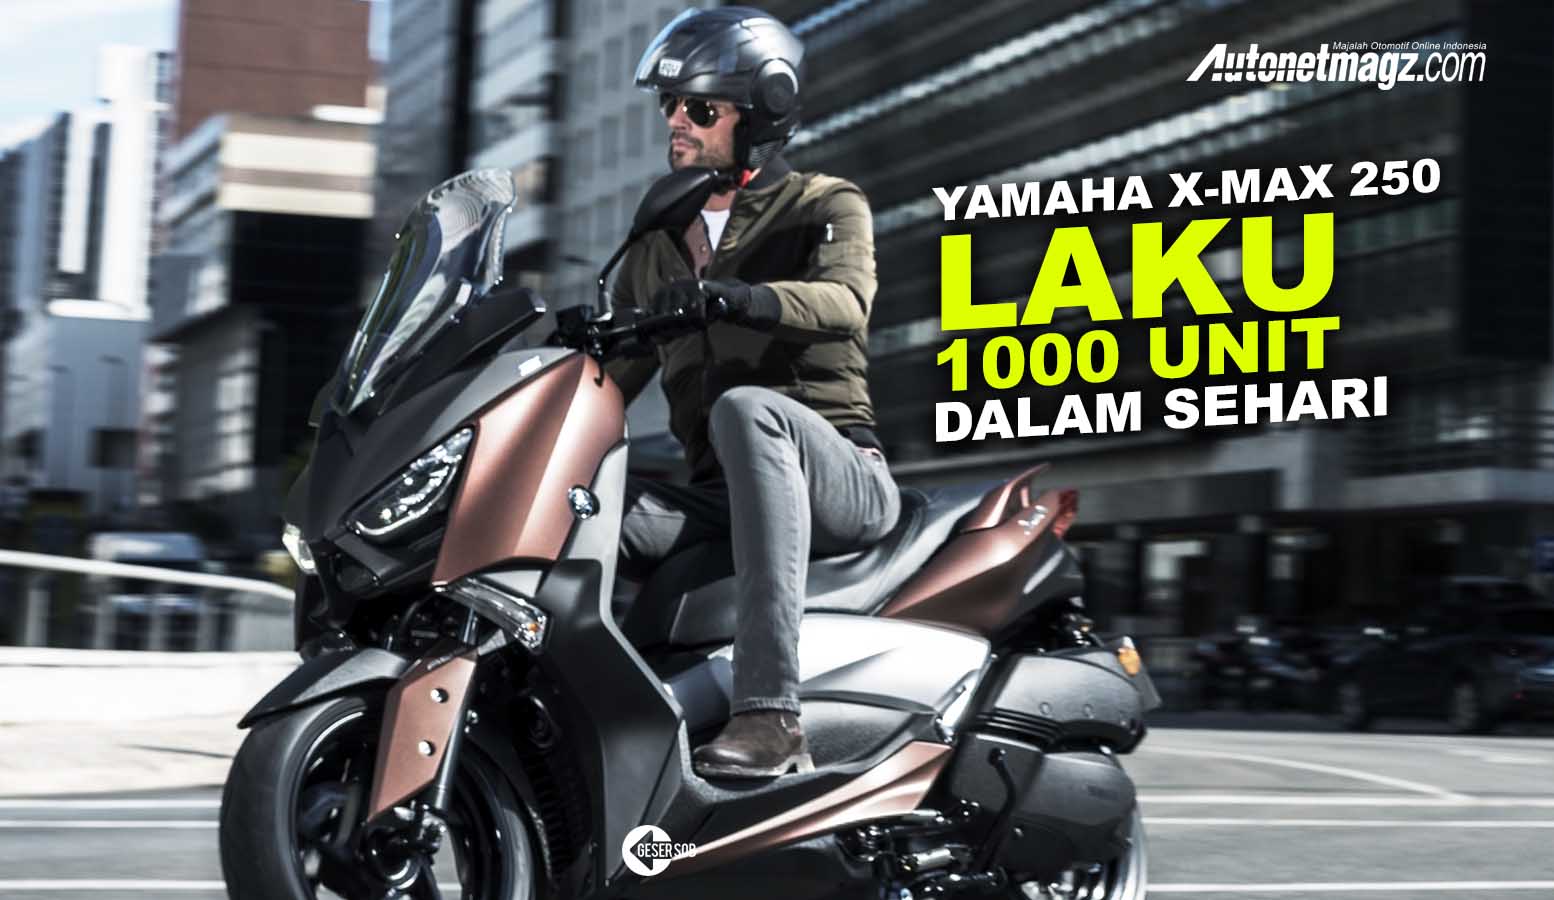 Berita, xmax cover: Yamaha X-Max 250 Laris Manis, 1000 Booking Dalam Satu Hari